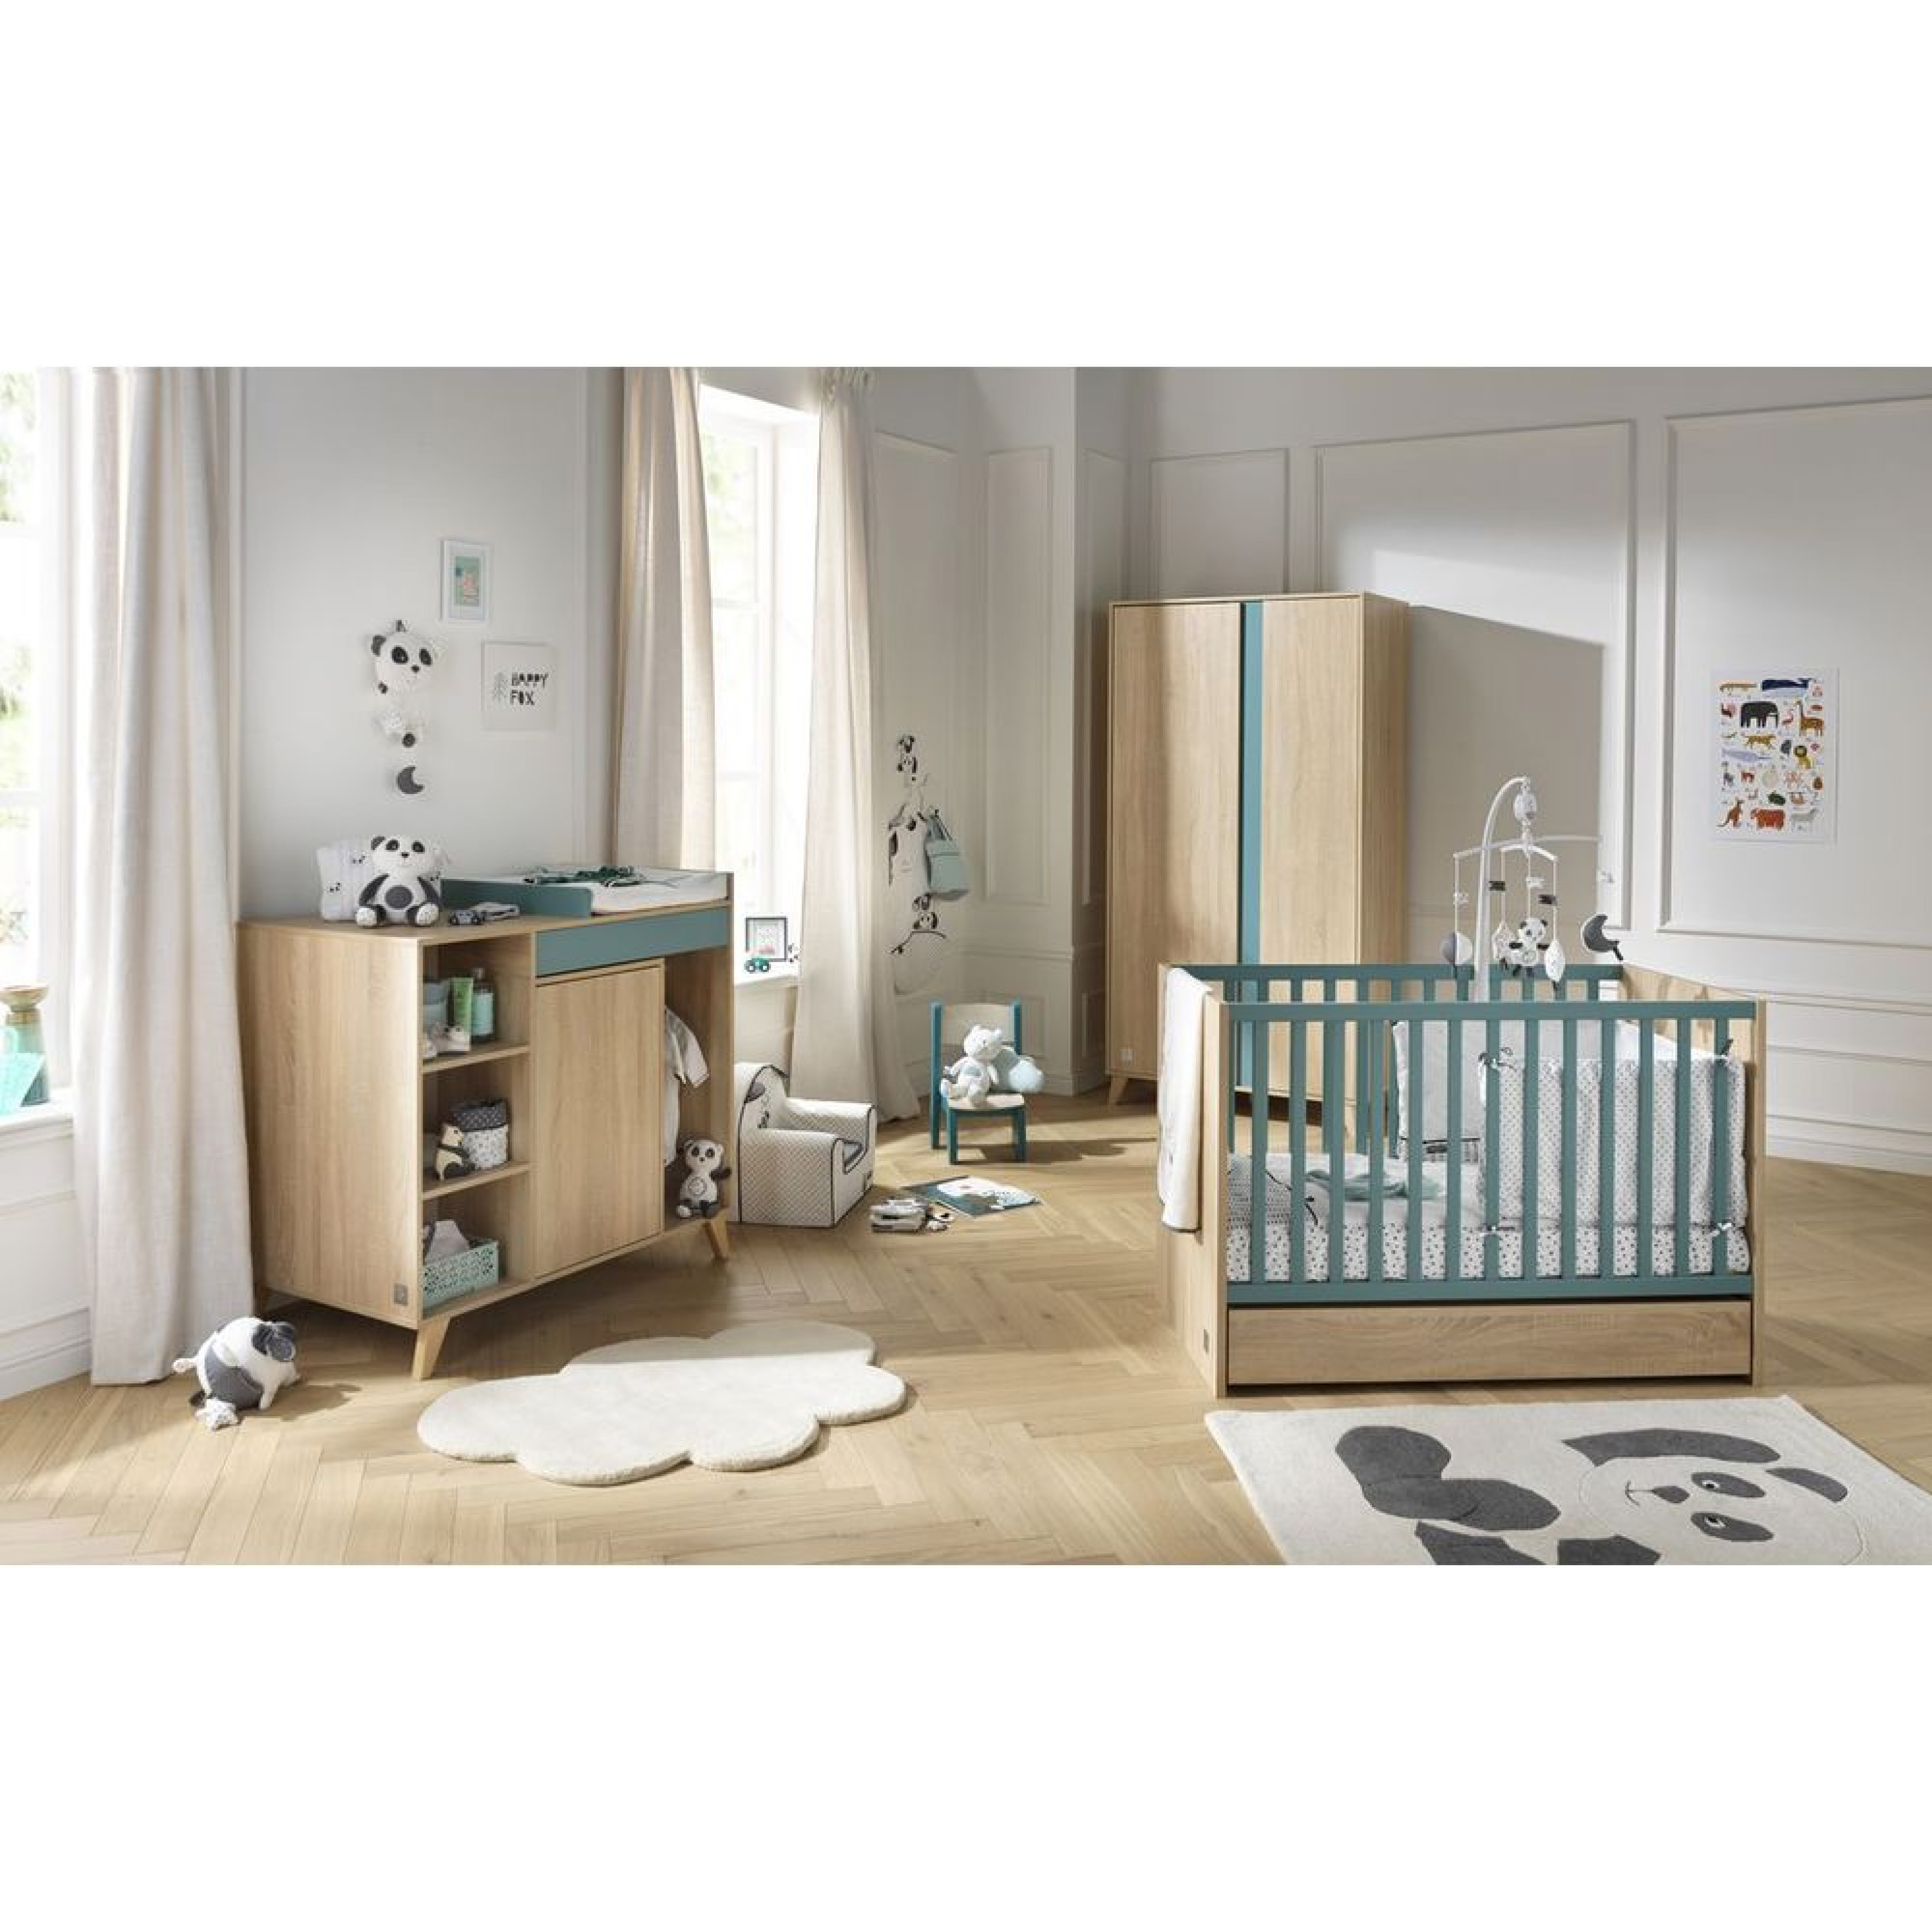 Décoration chambre bébé : toises pour bébé : Aubert